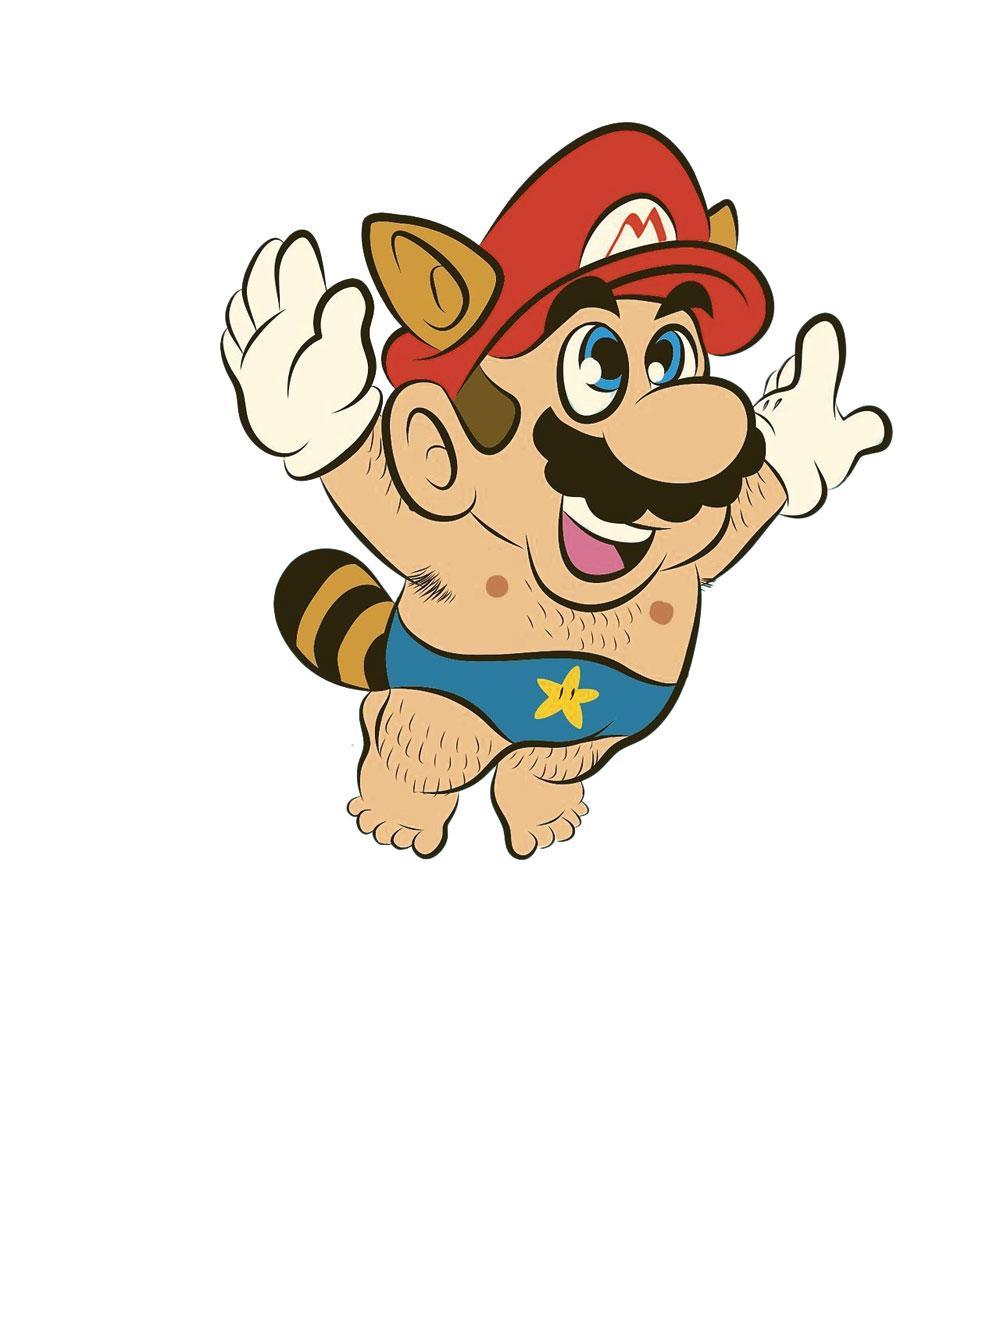 Een inleiding tot Toad, het personage uit Mario dat wordt vergeleken met de penis van Trump